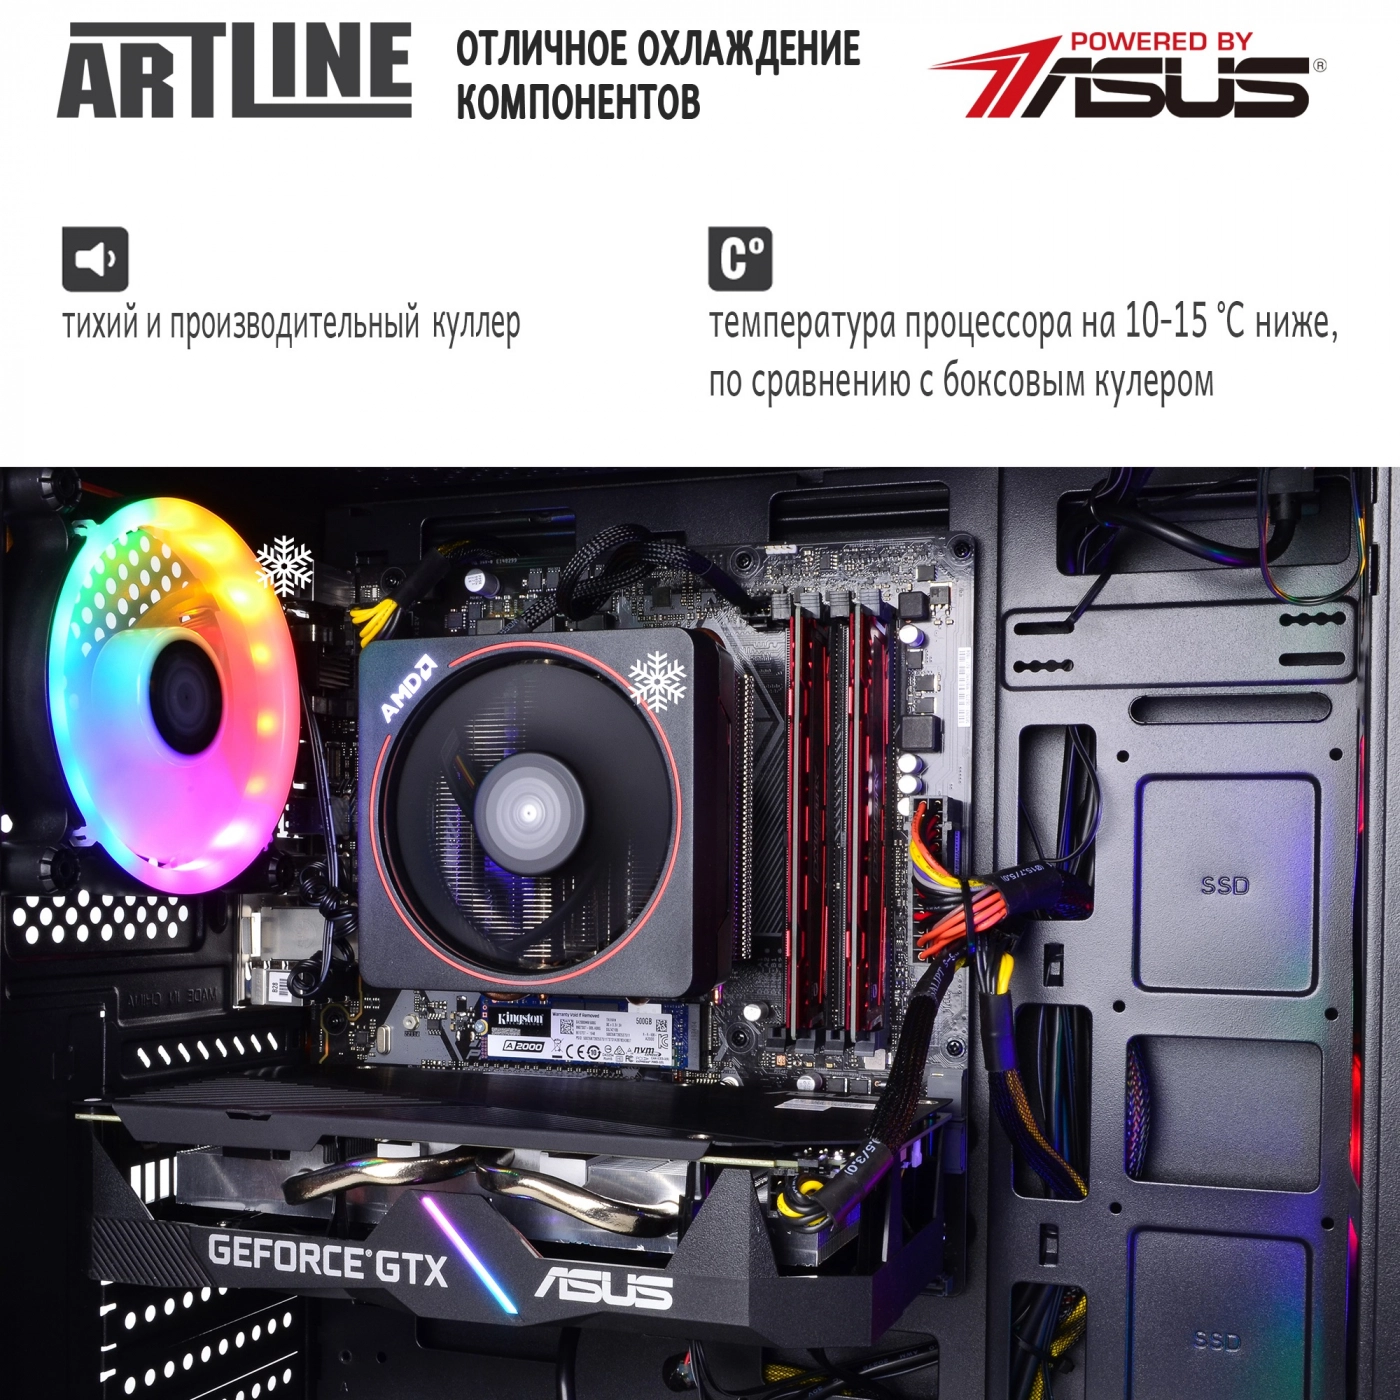 Купить Компьютер ARTLINE Gaming X47v36 - фото 7